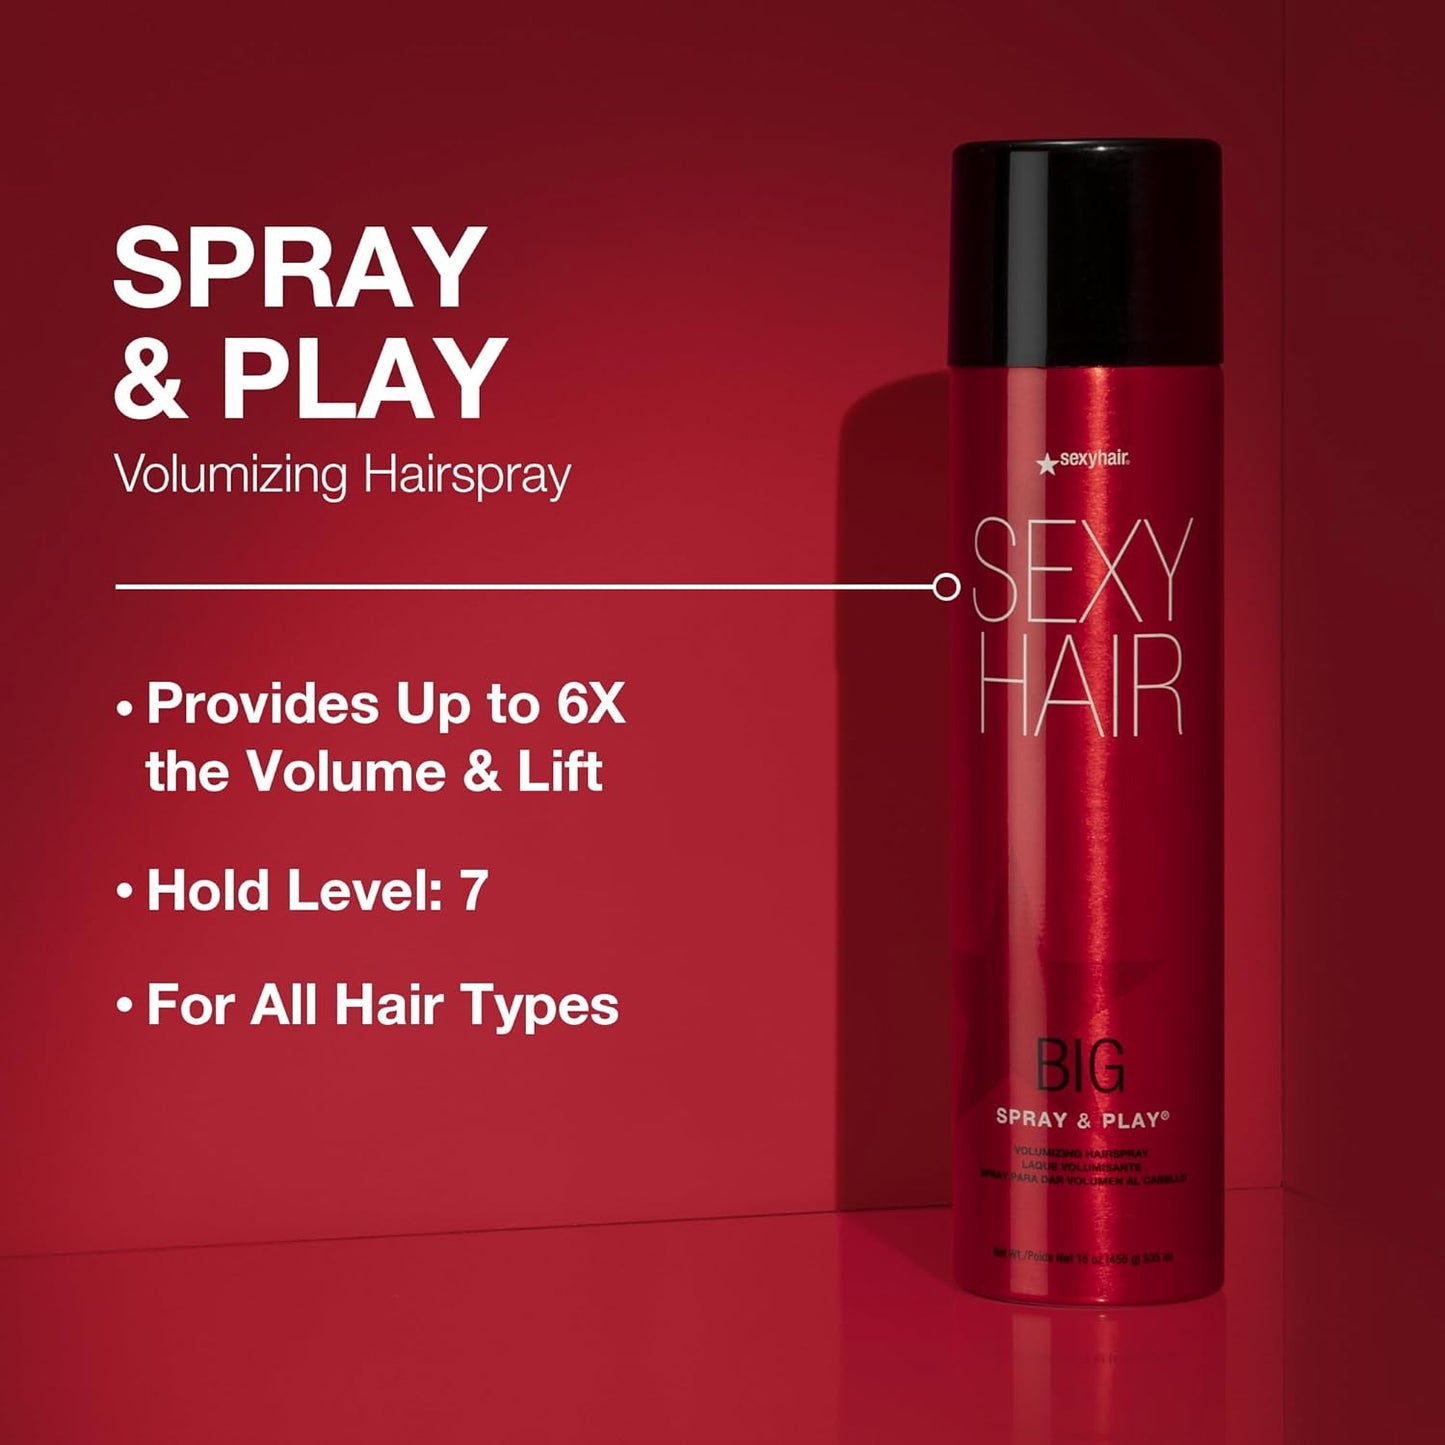 Big Sexy Hair Spray & Play Volumizing Hairspray 10 oz